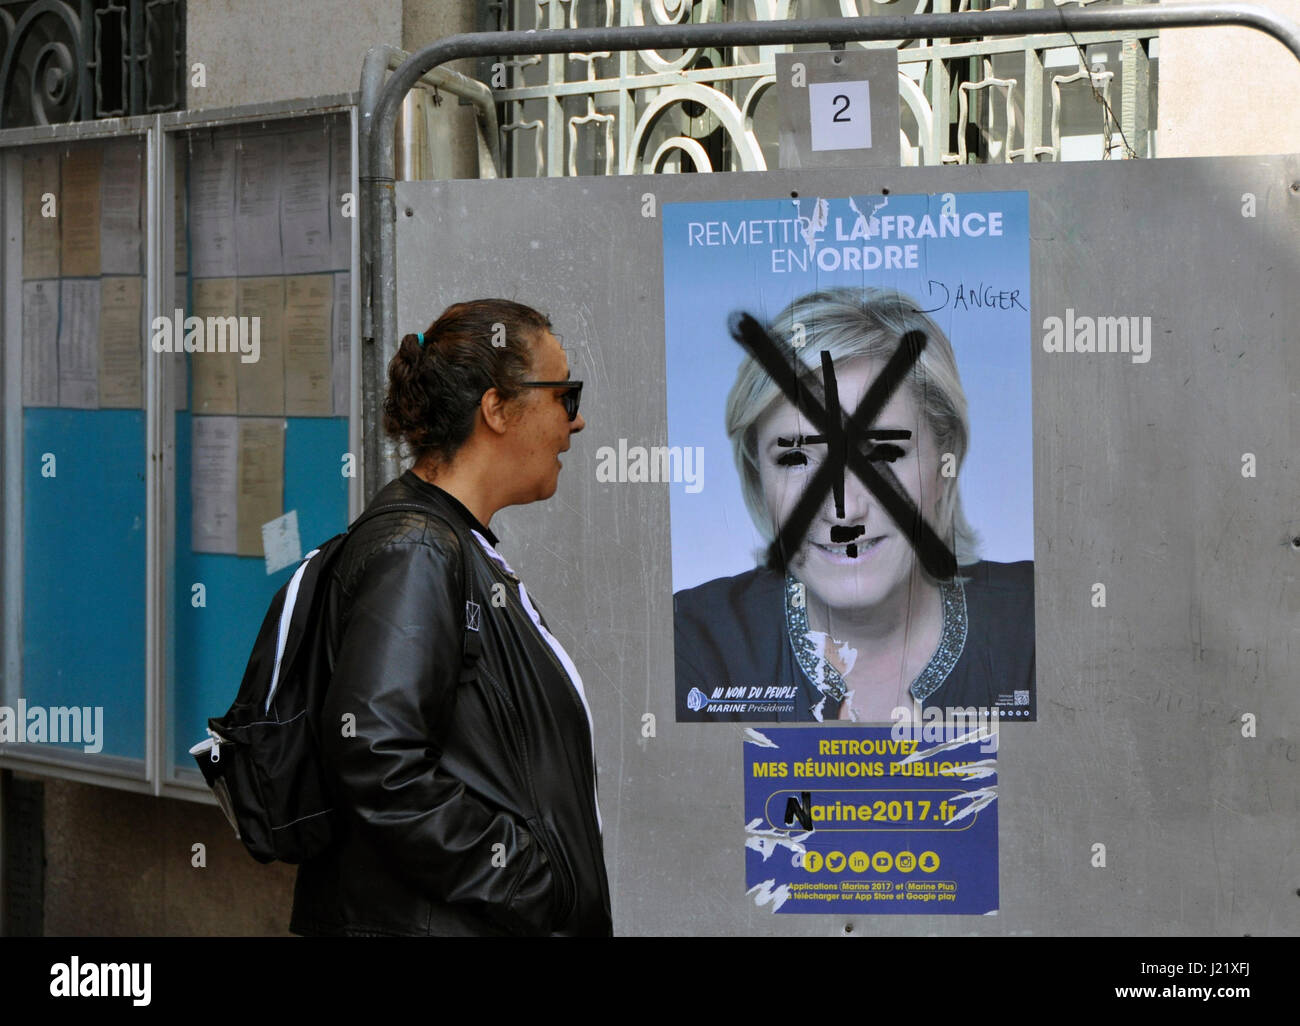 Montreuil, Paris. Apr 23, 2017. Affiches de campagne électorale griffonné avec les candidats à l'élection présidentielle Marine Le Pen à Montreuil, Paris, France, le 23 avril 2017. Photo : CTK Vlachos Remy/Photo/Alamy Live News Banque D'Images